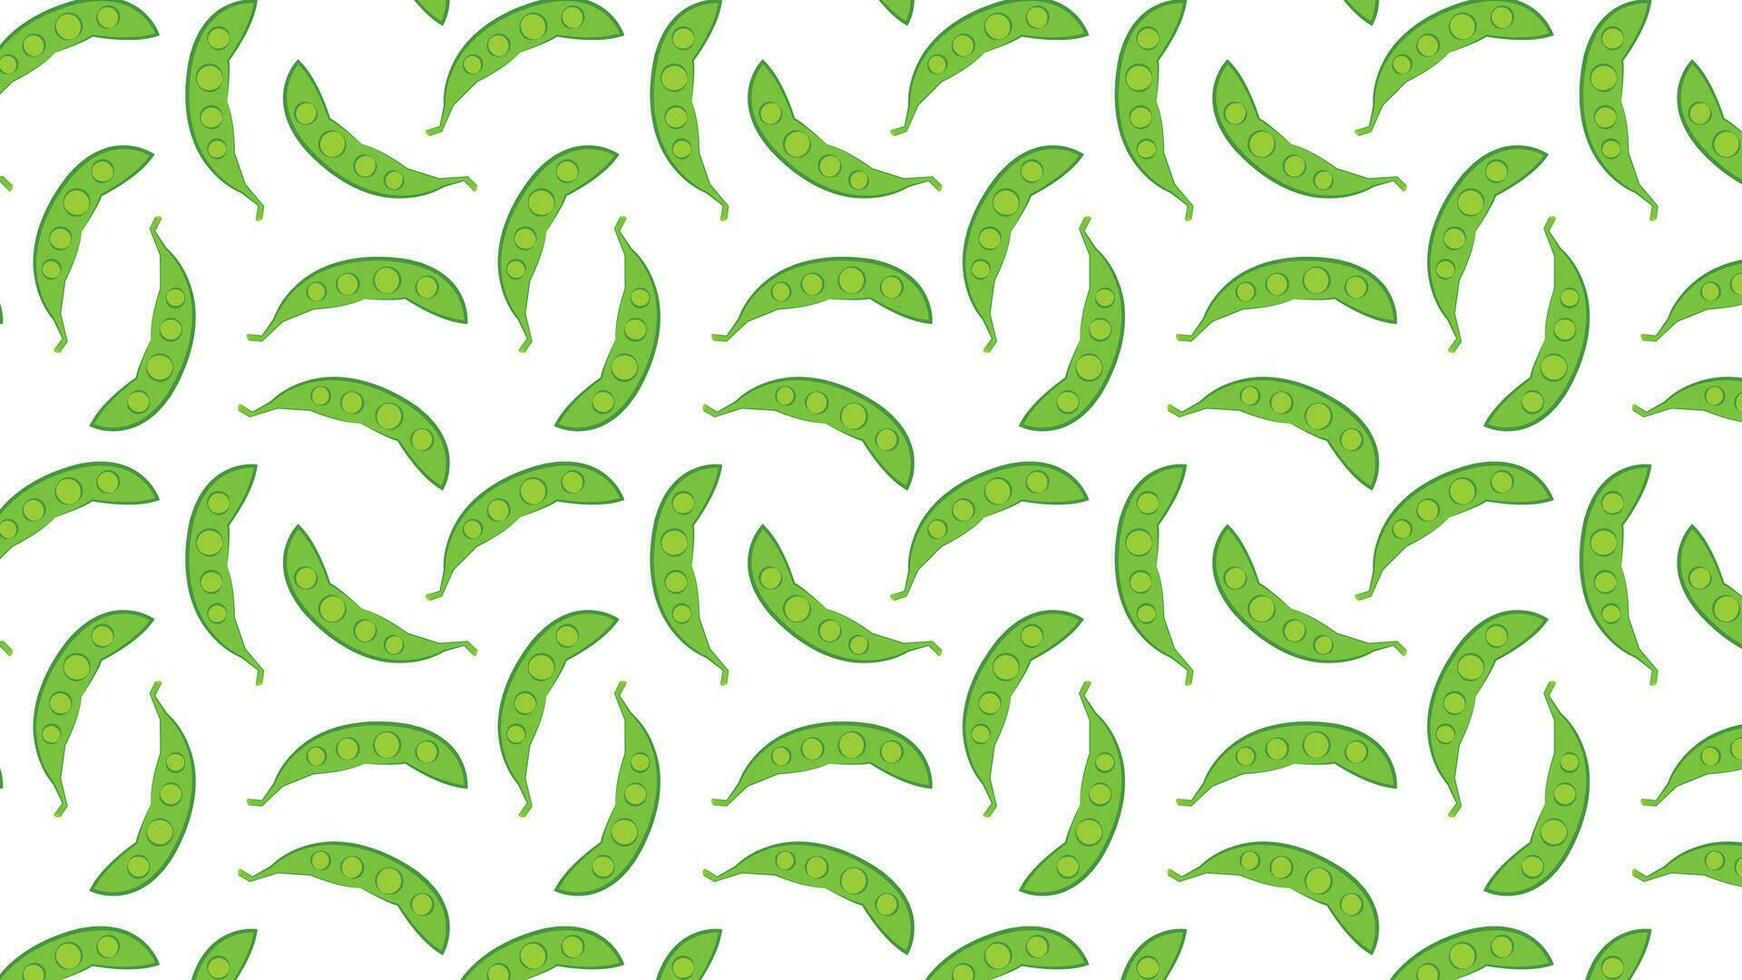 Vektor der grünen Erbsen auf weißem Hintergrund. Symbolvektor für grüne Erbsen. Logo Design.